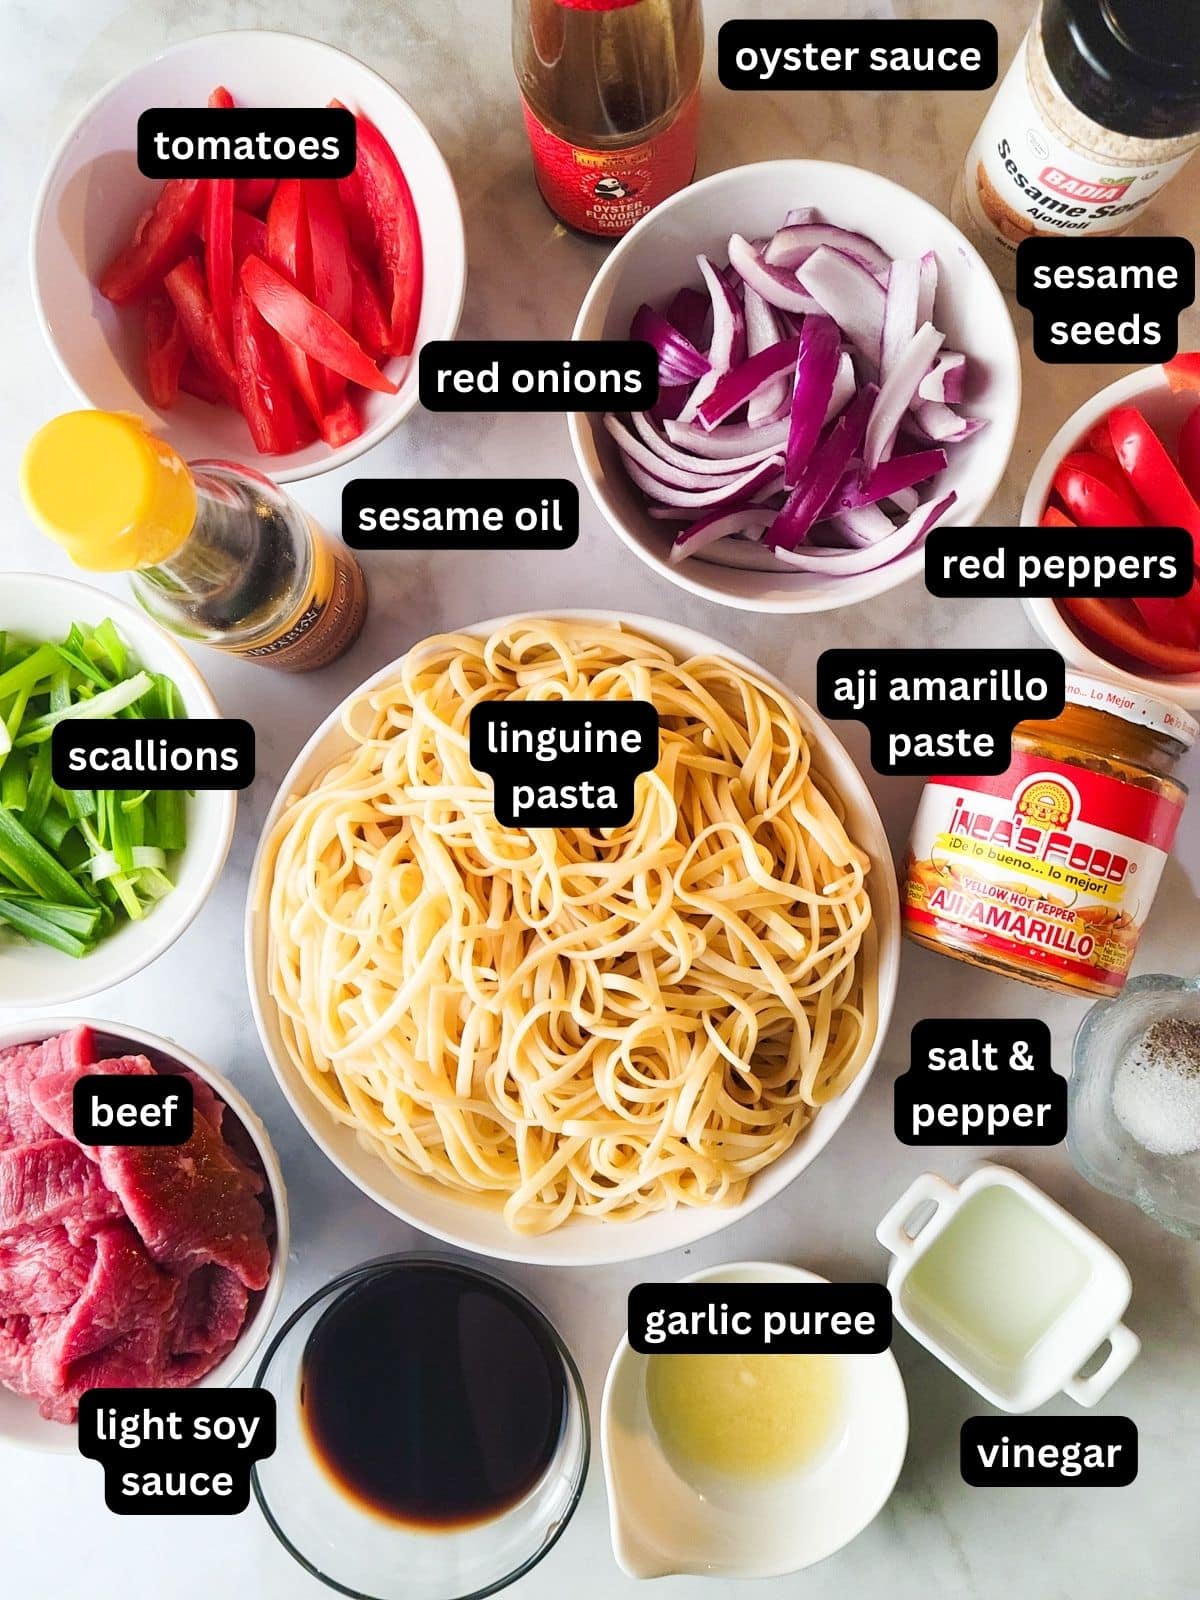 Image of ingredients to make Tallarin Saltado.